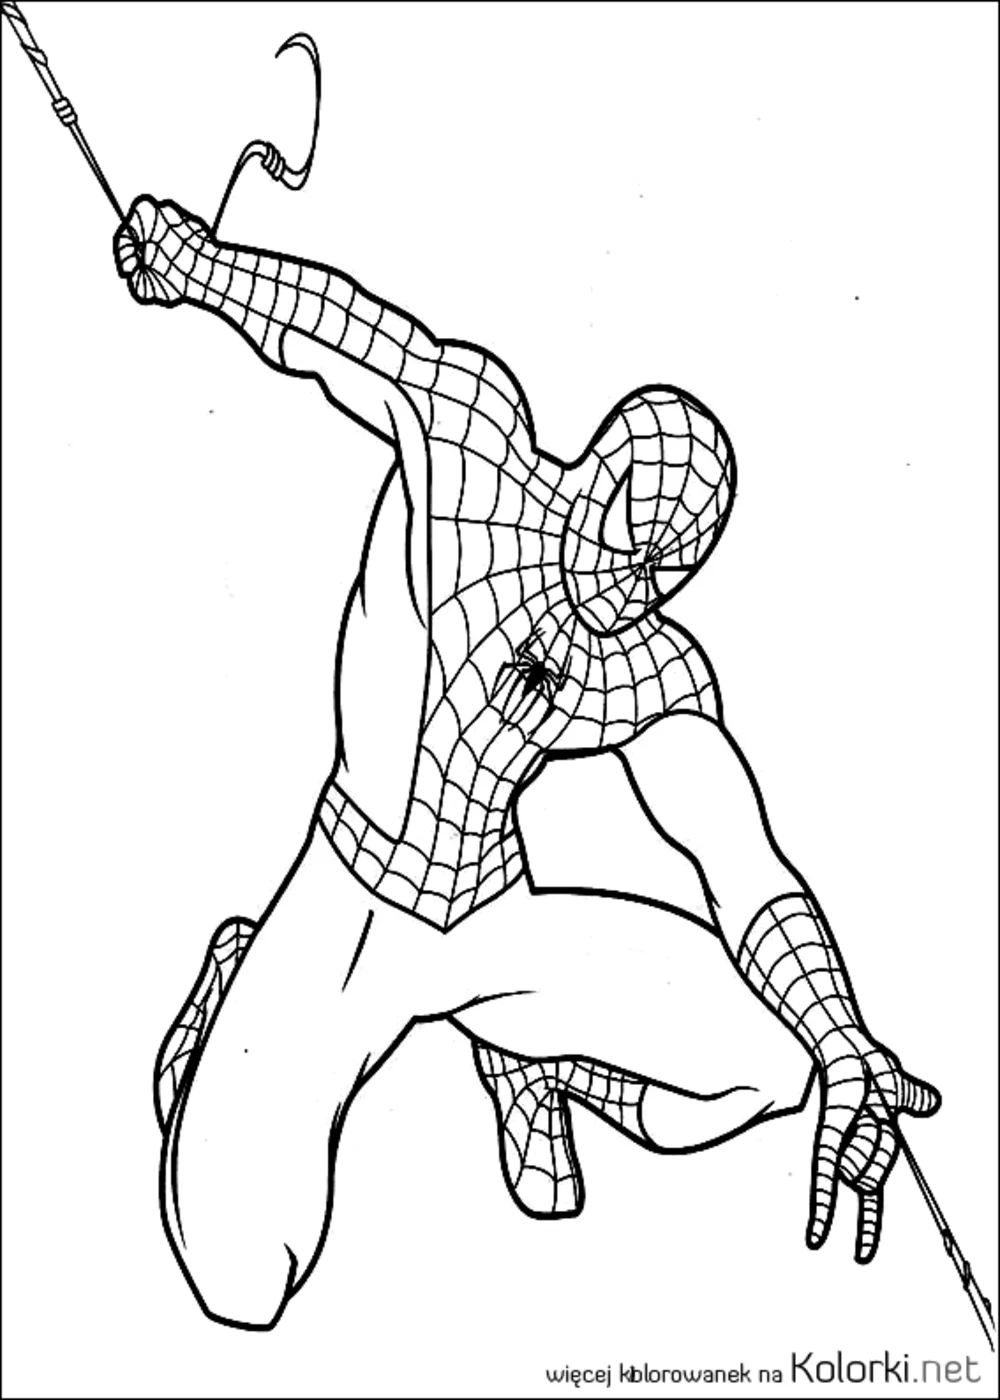 Spiderman, superbohater